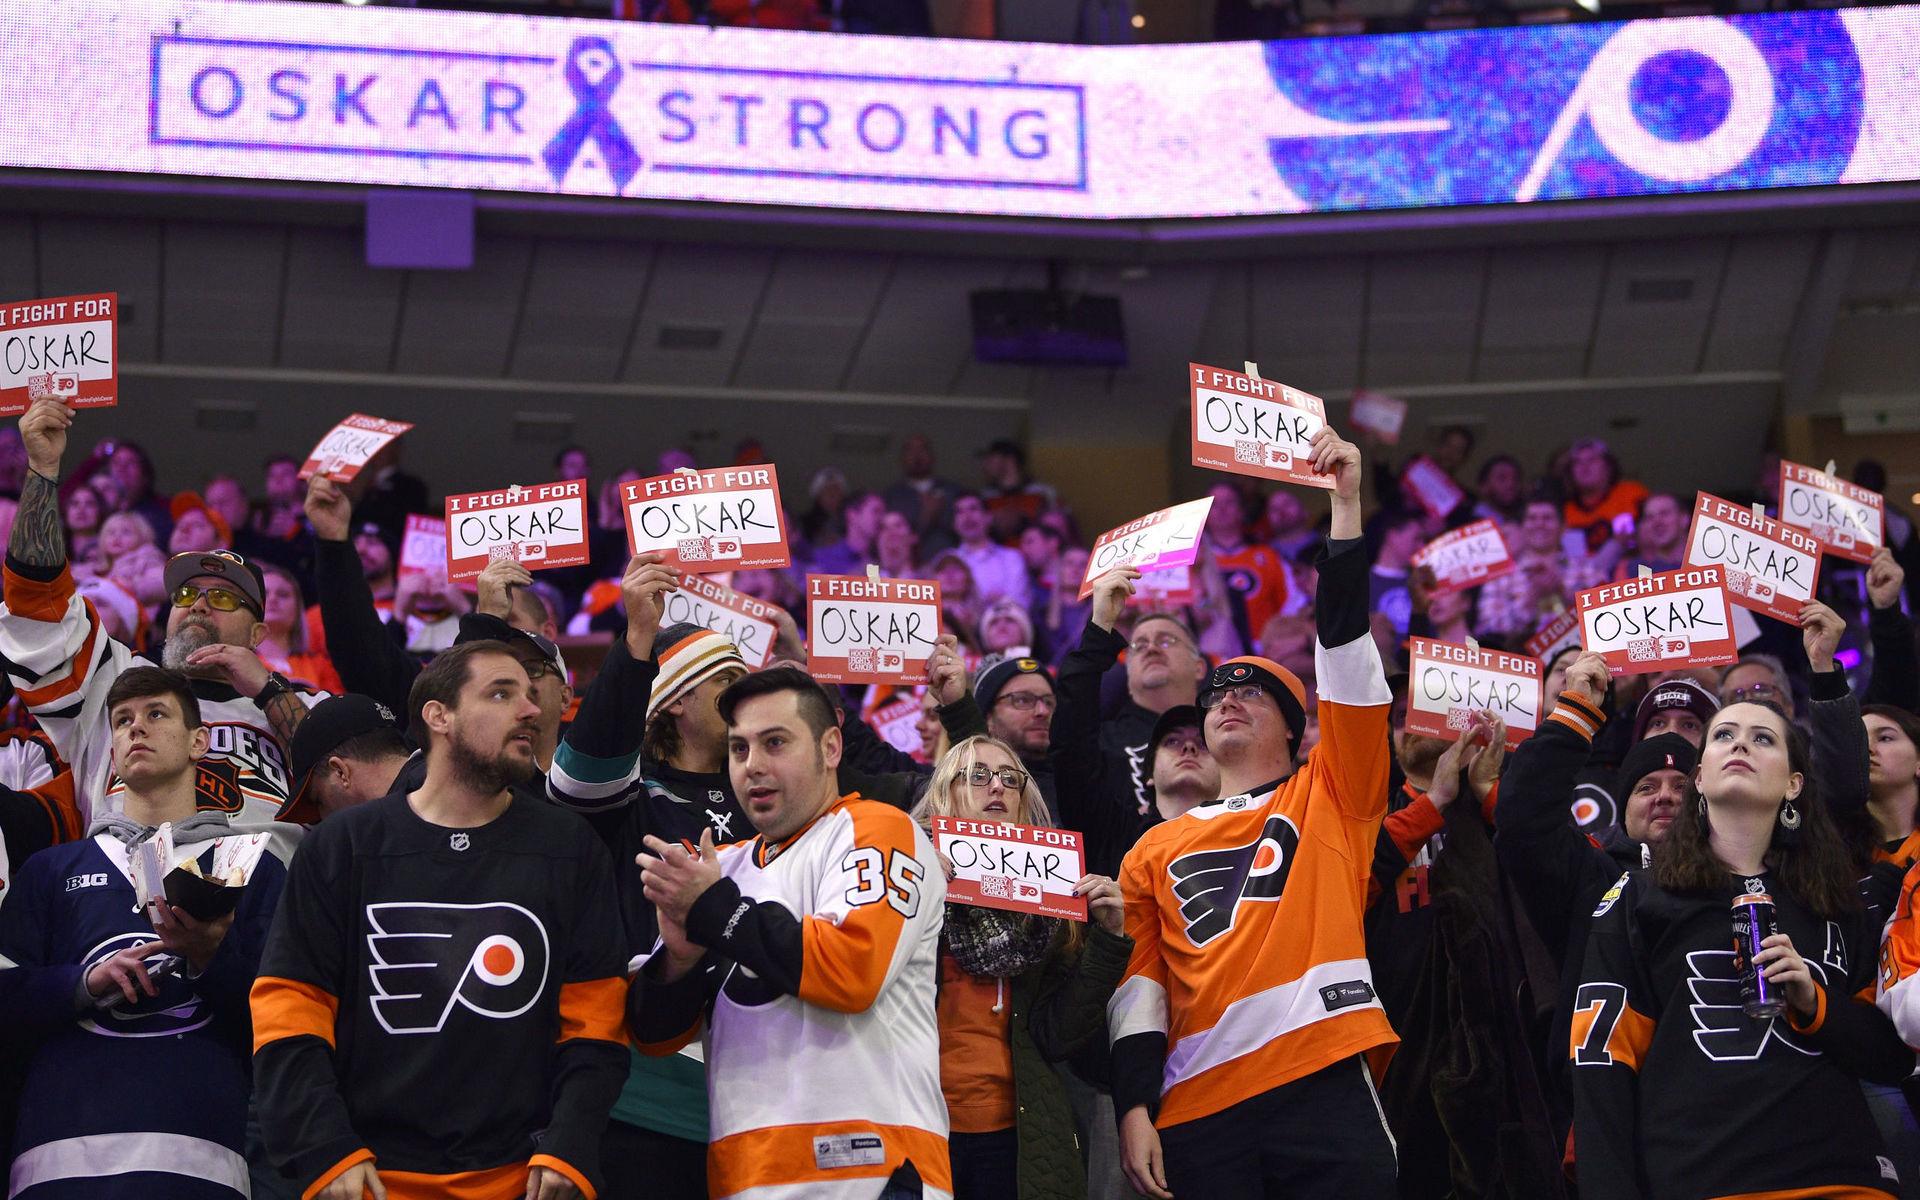 I fredags meddelade Philadelphia Flyers att den svenske forwarden Oskar Lindblom drabbats av en cancersjukdom. Under tisdagen visade publiken sitt stöd till svensken i lagets hemmaarena. 